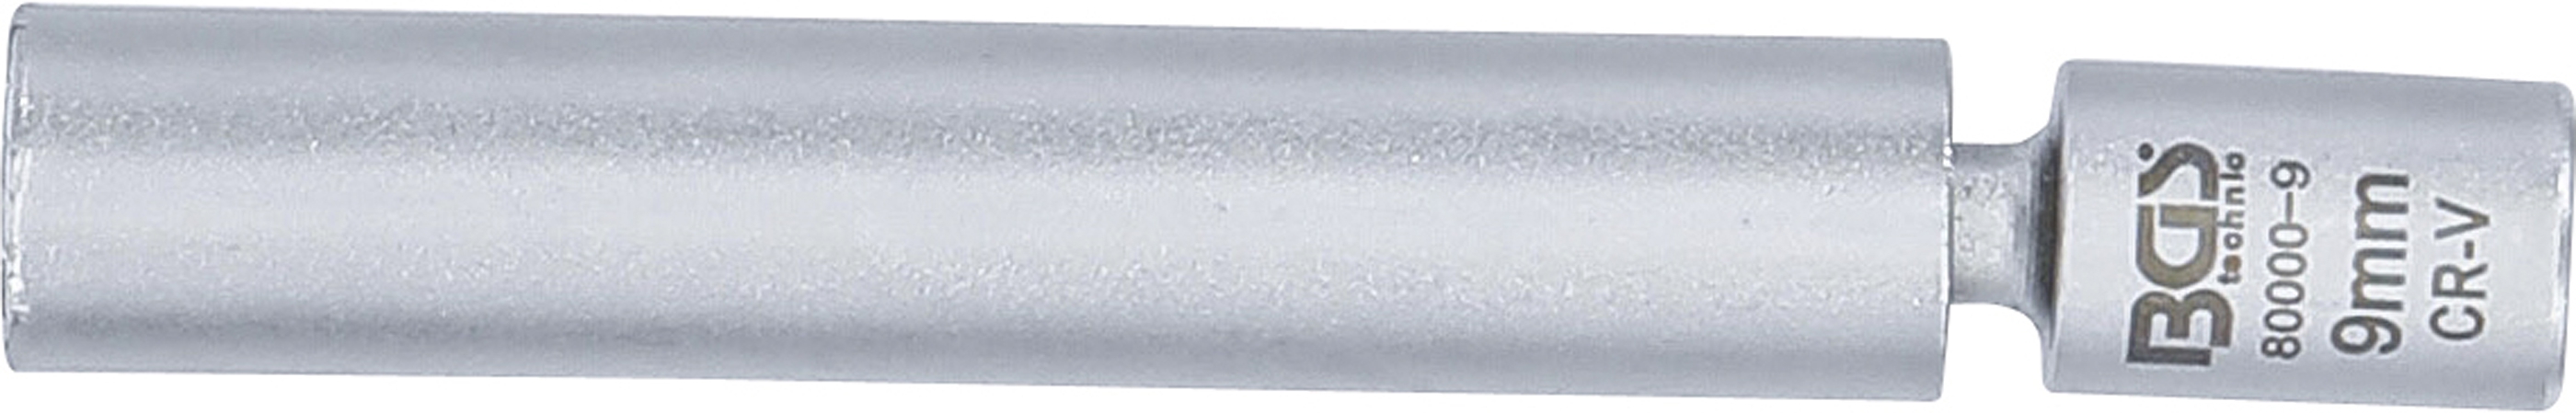 Glüh- und Zündkerzen-Gelenk-Einsatz | Antrieb Innenvierkant 6,3 mm (1/4") | SW 9 mm